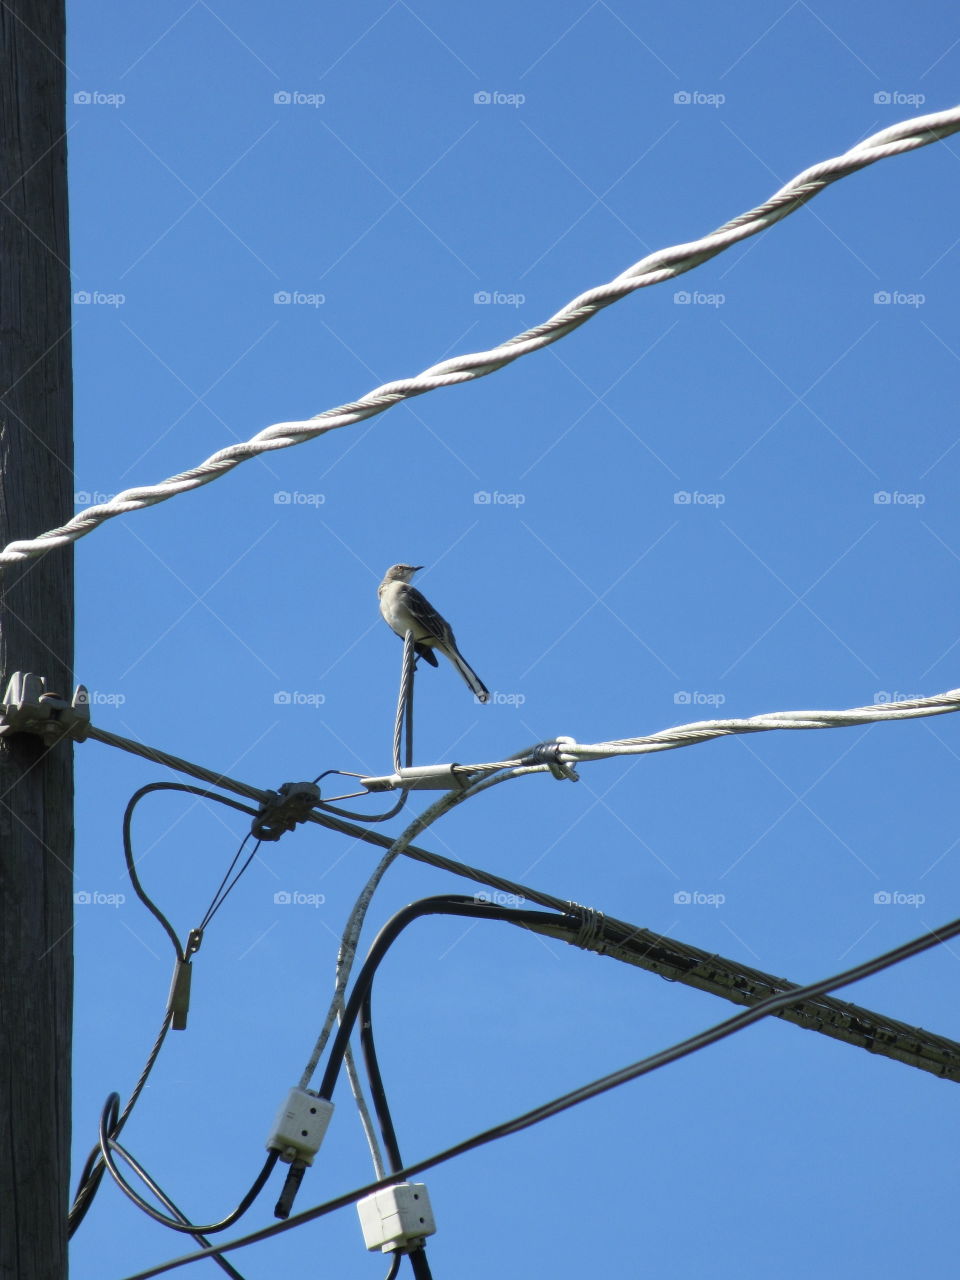 bird on a wire. bird on a wire